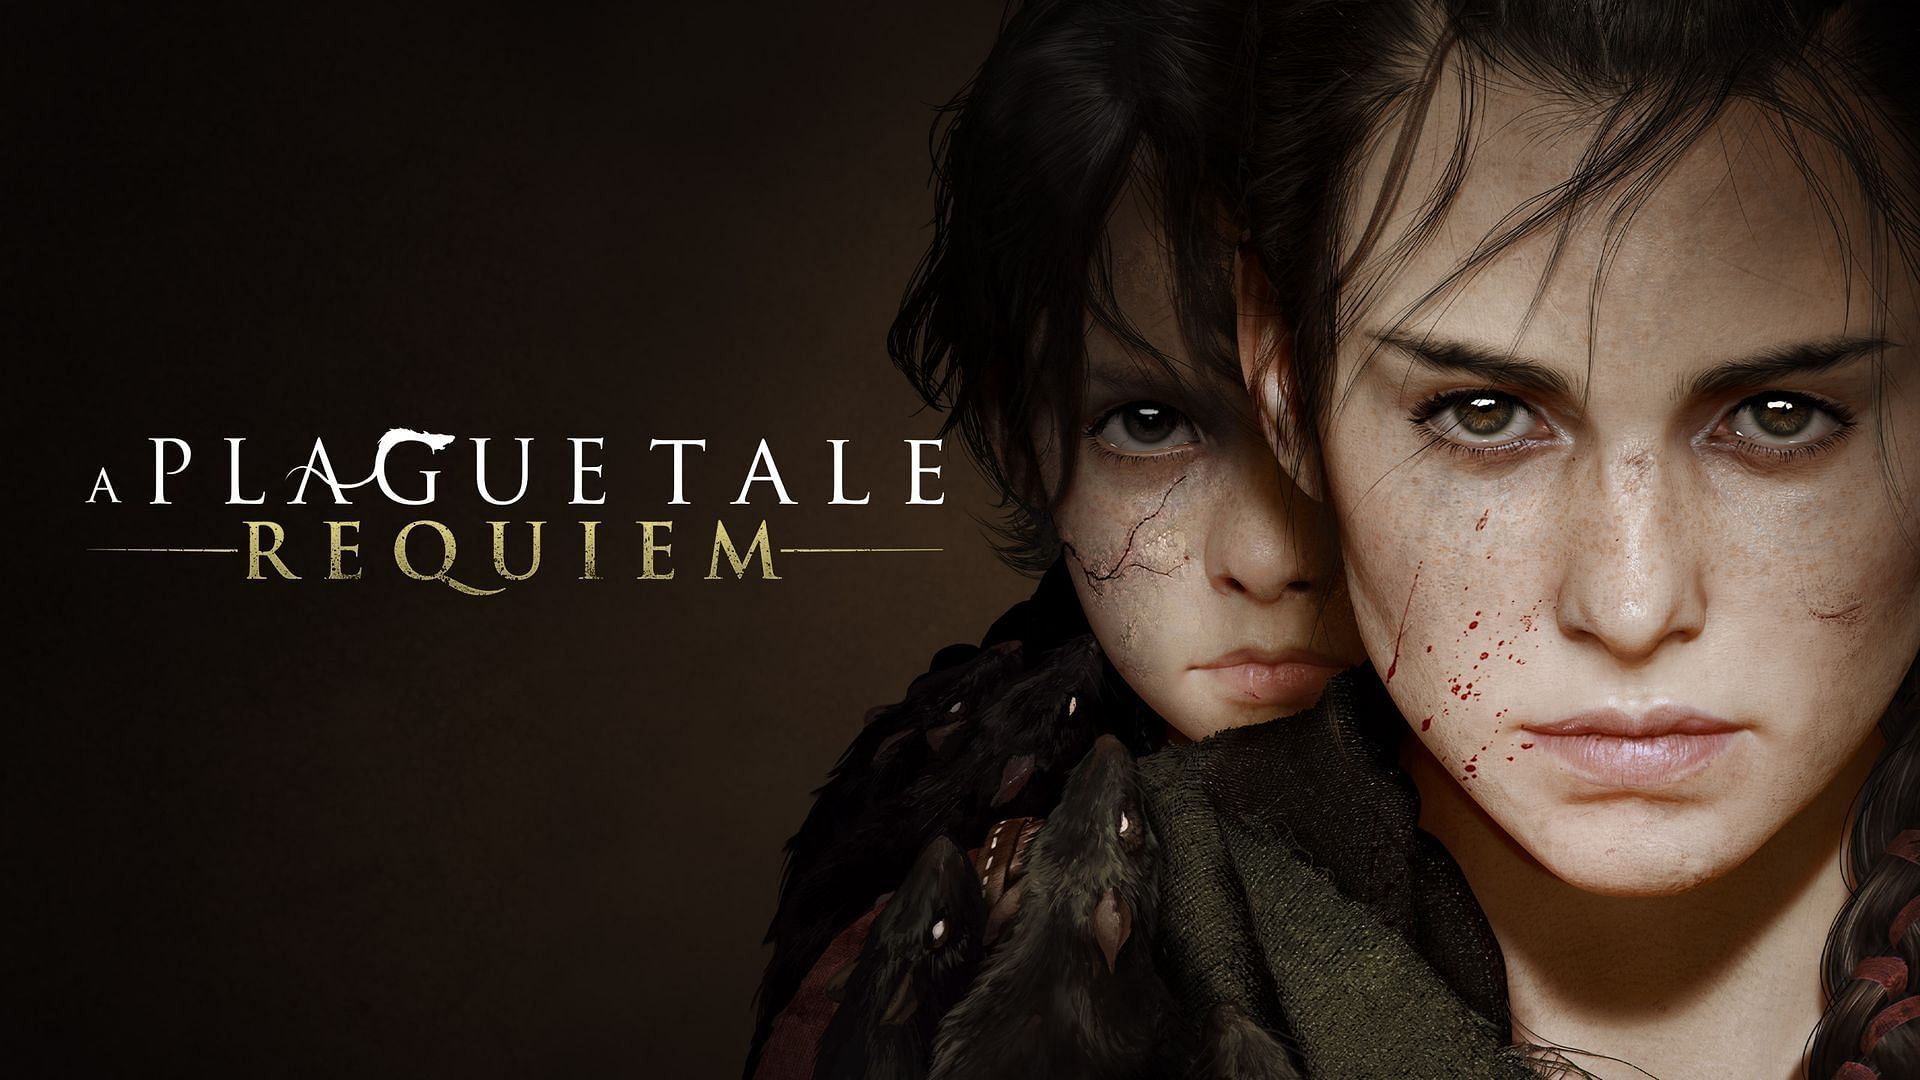 Official artwork for A Plague Tale: Requiem (Image via Asobo Studio)